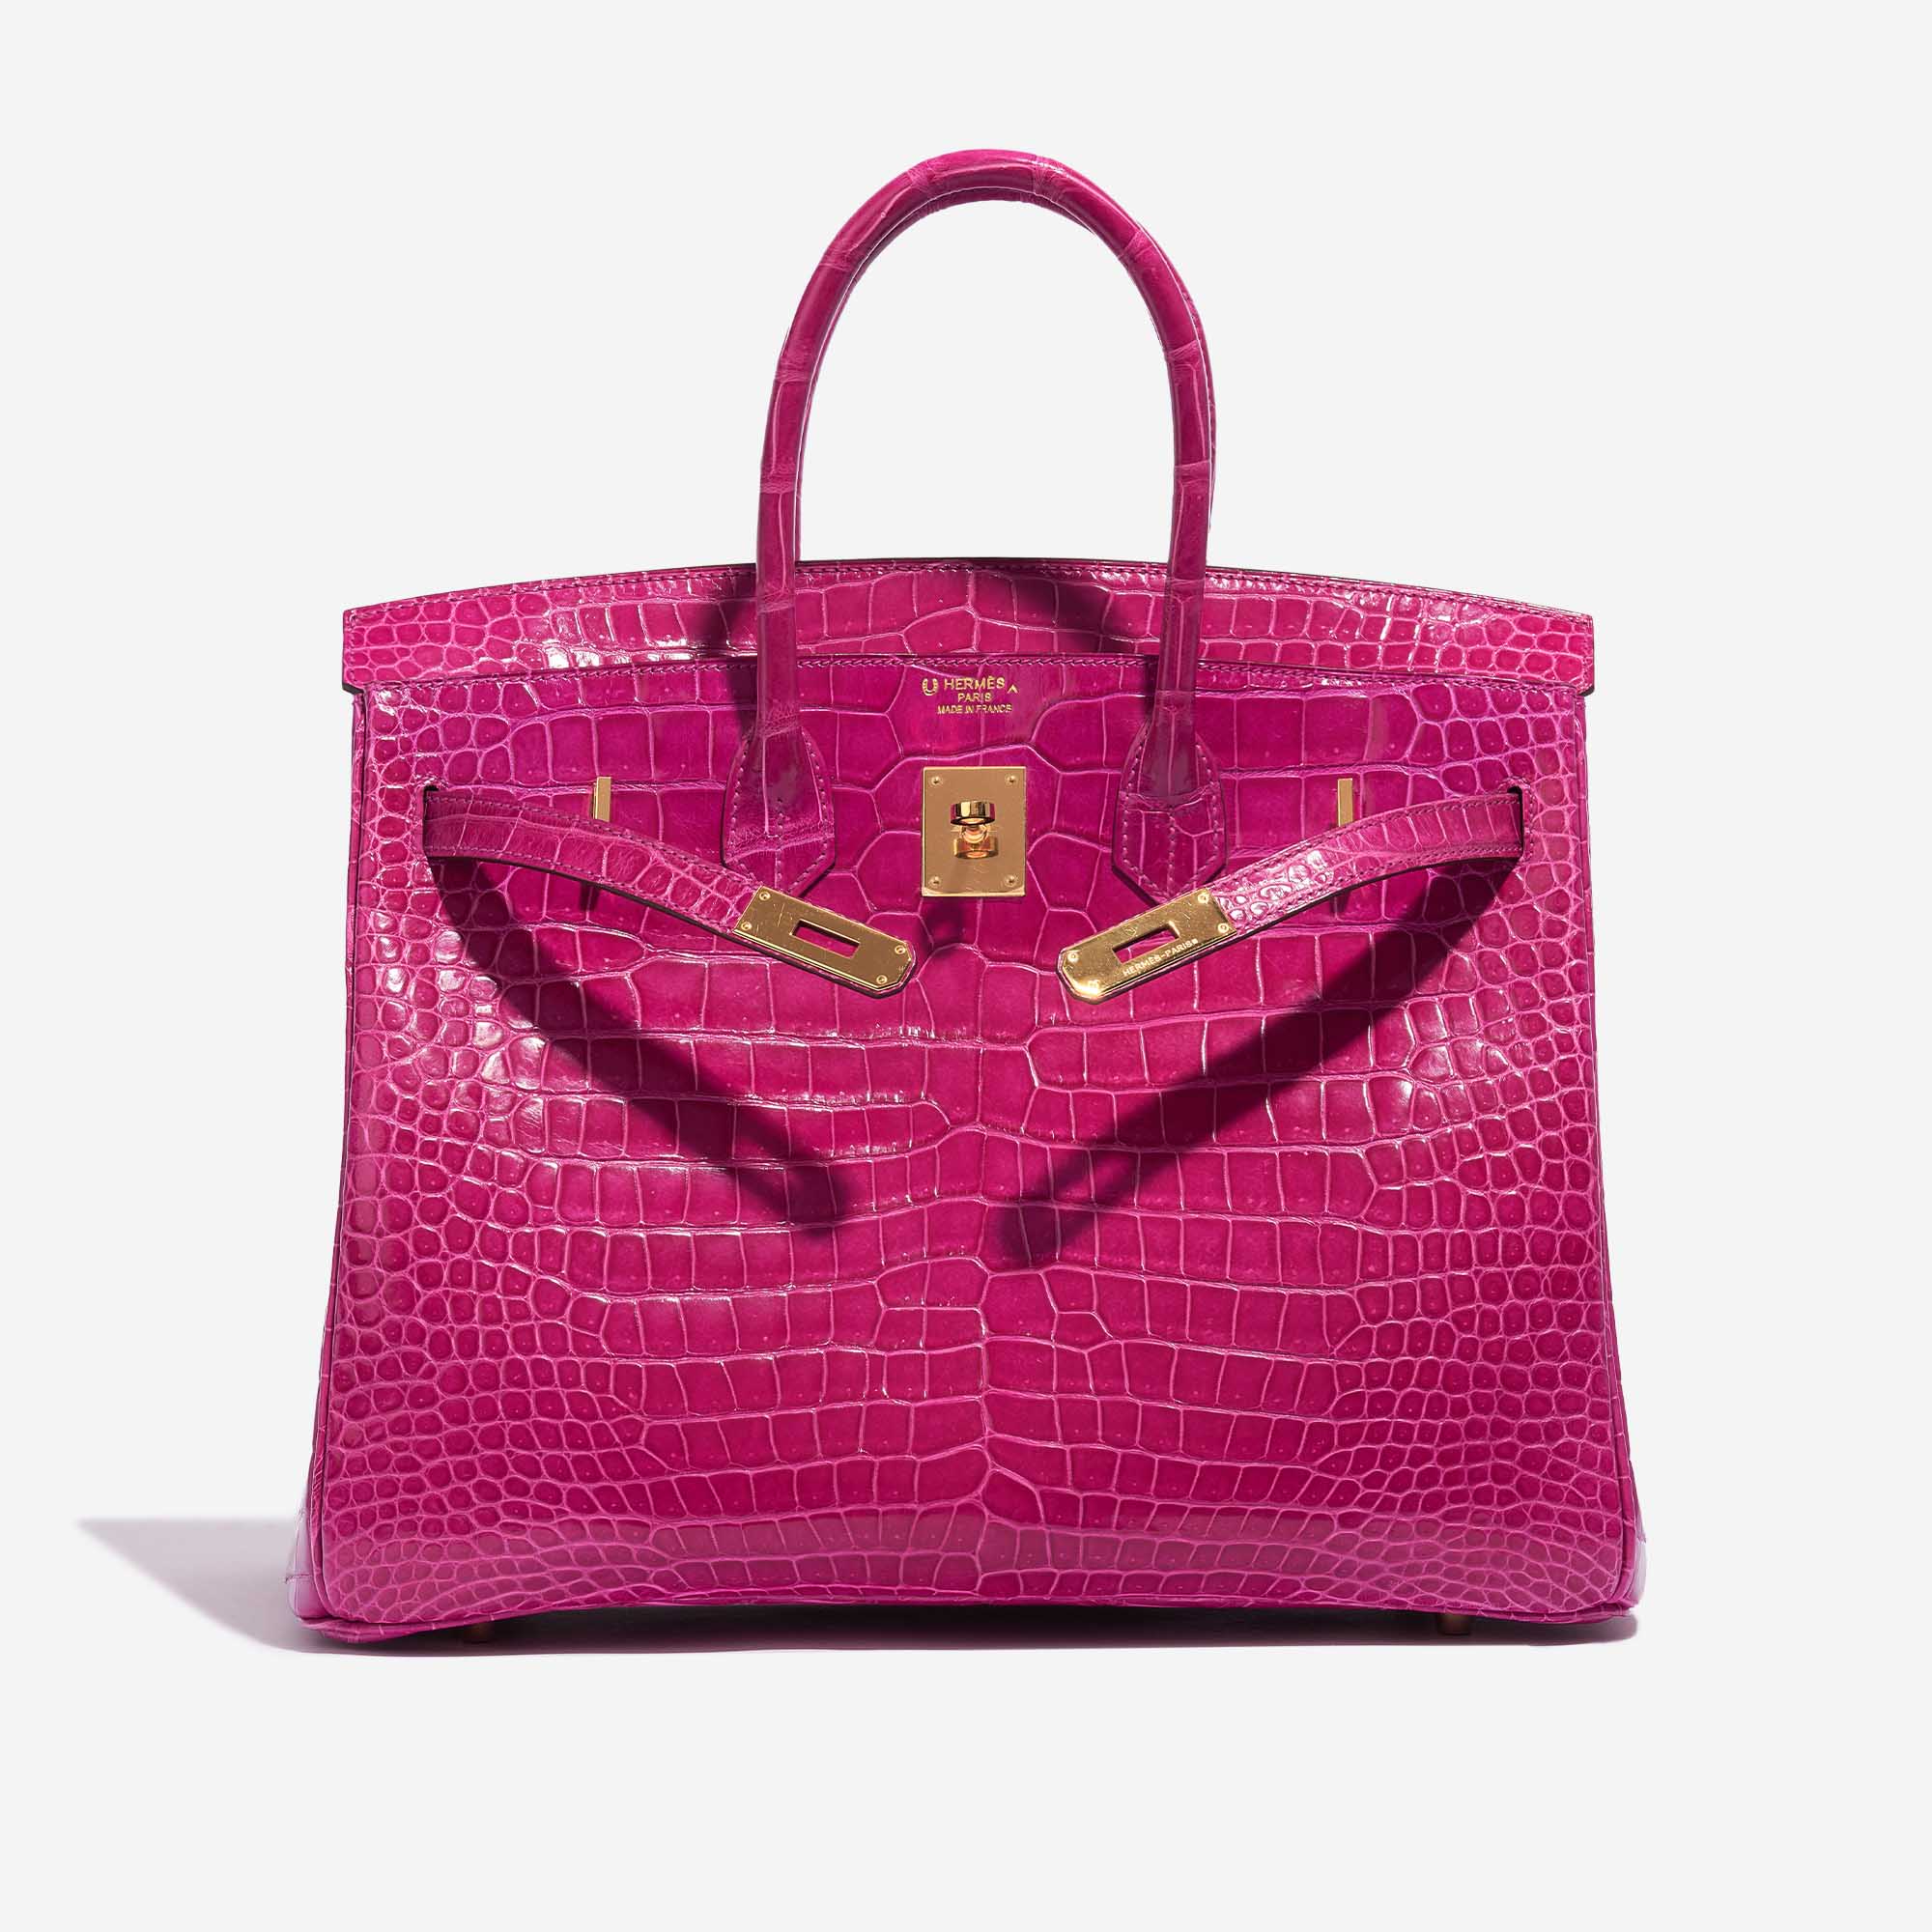 Pre-owned Hermès Tasche Birkin 35 Porosus Crocodile Rose Scheherazade Pink Front Open | Verkaufen Sie Ihre Designer-Tasche auf Saclab.com